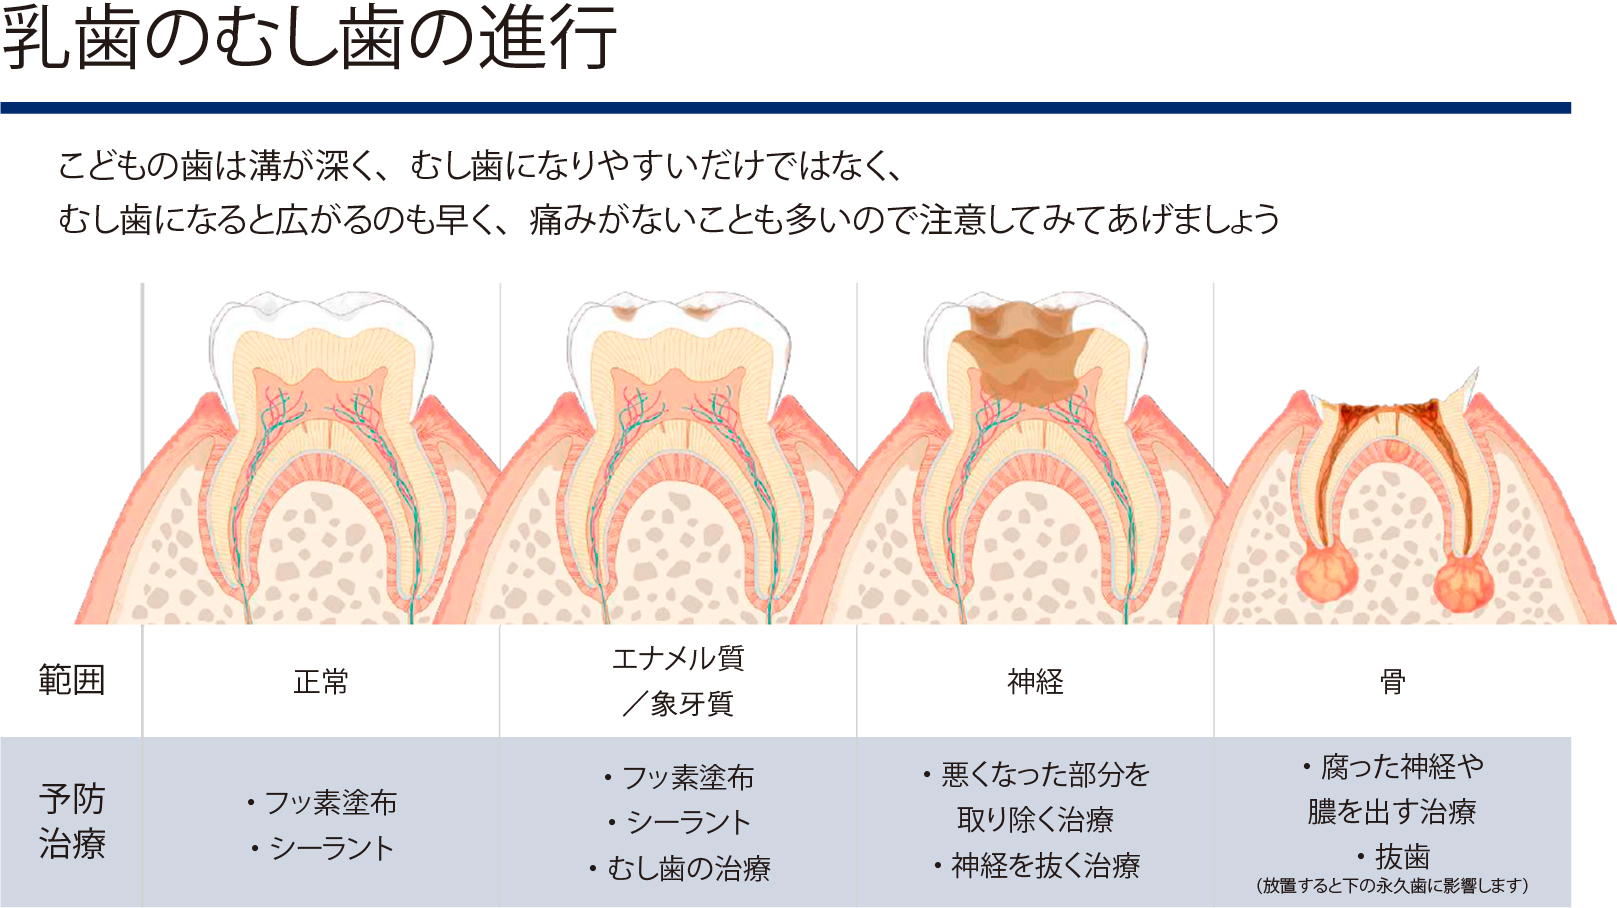 乳歯のむし歯の進行